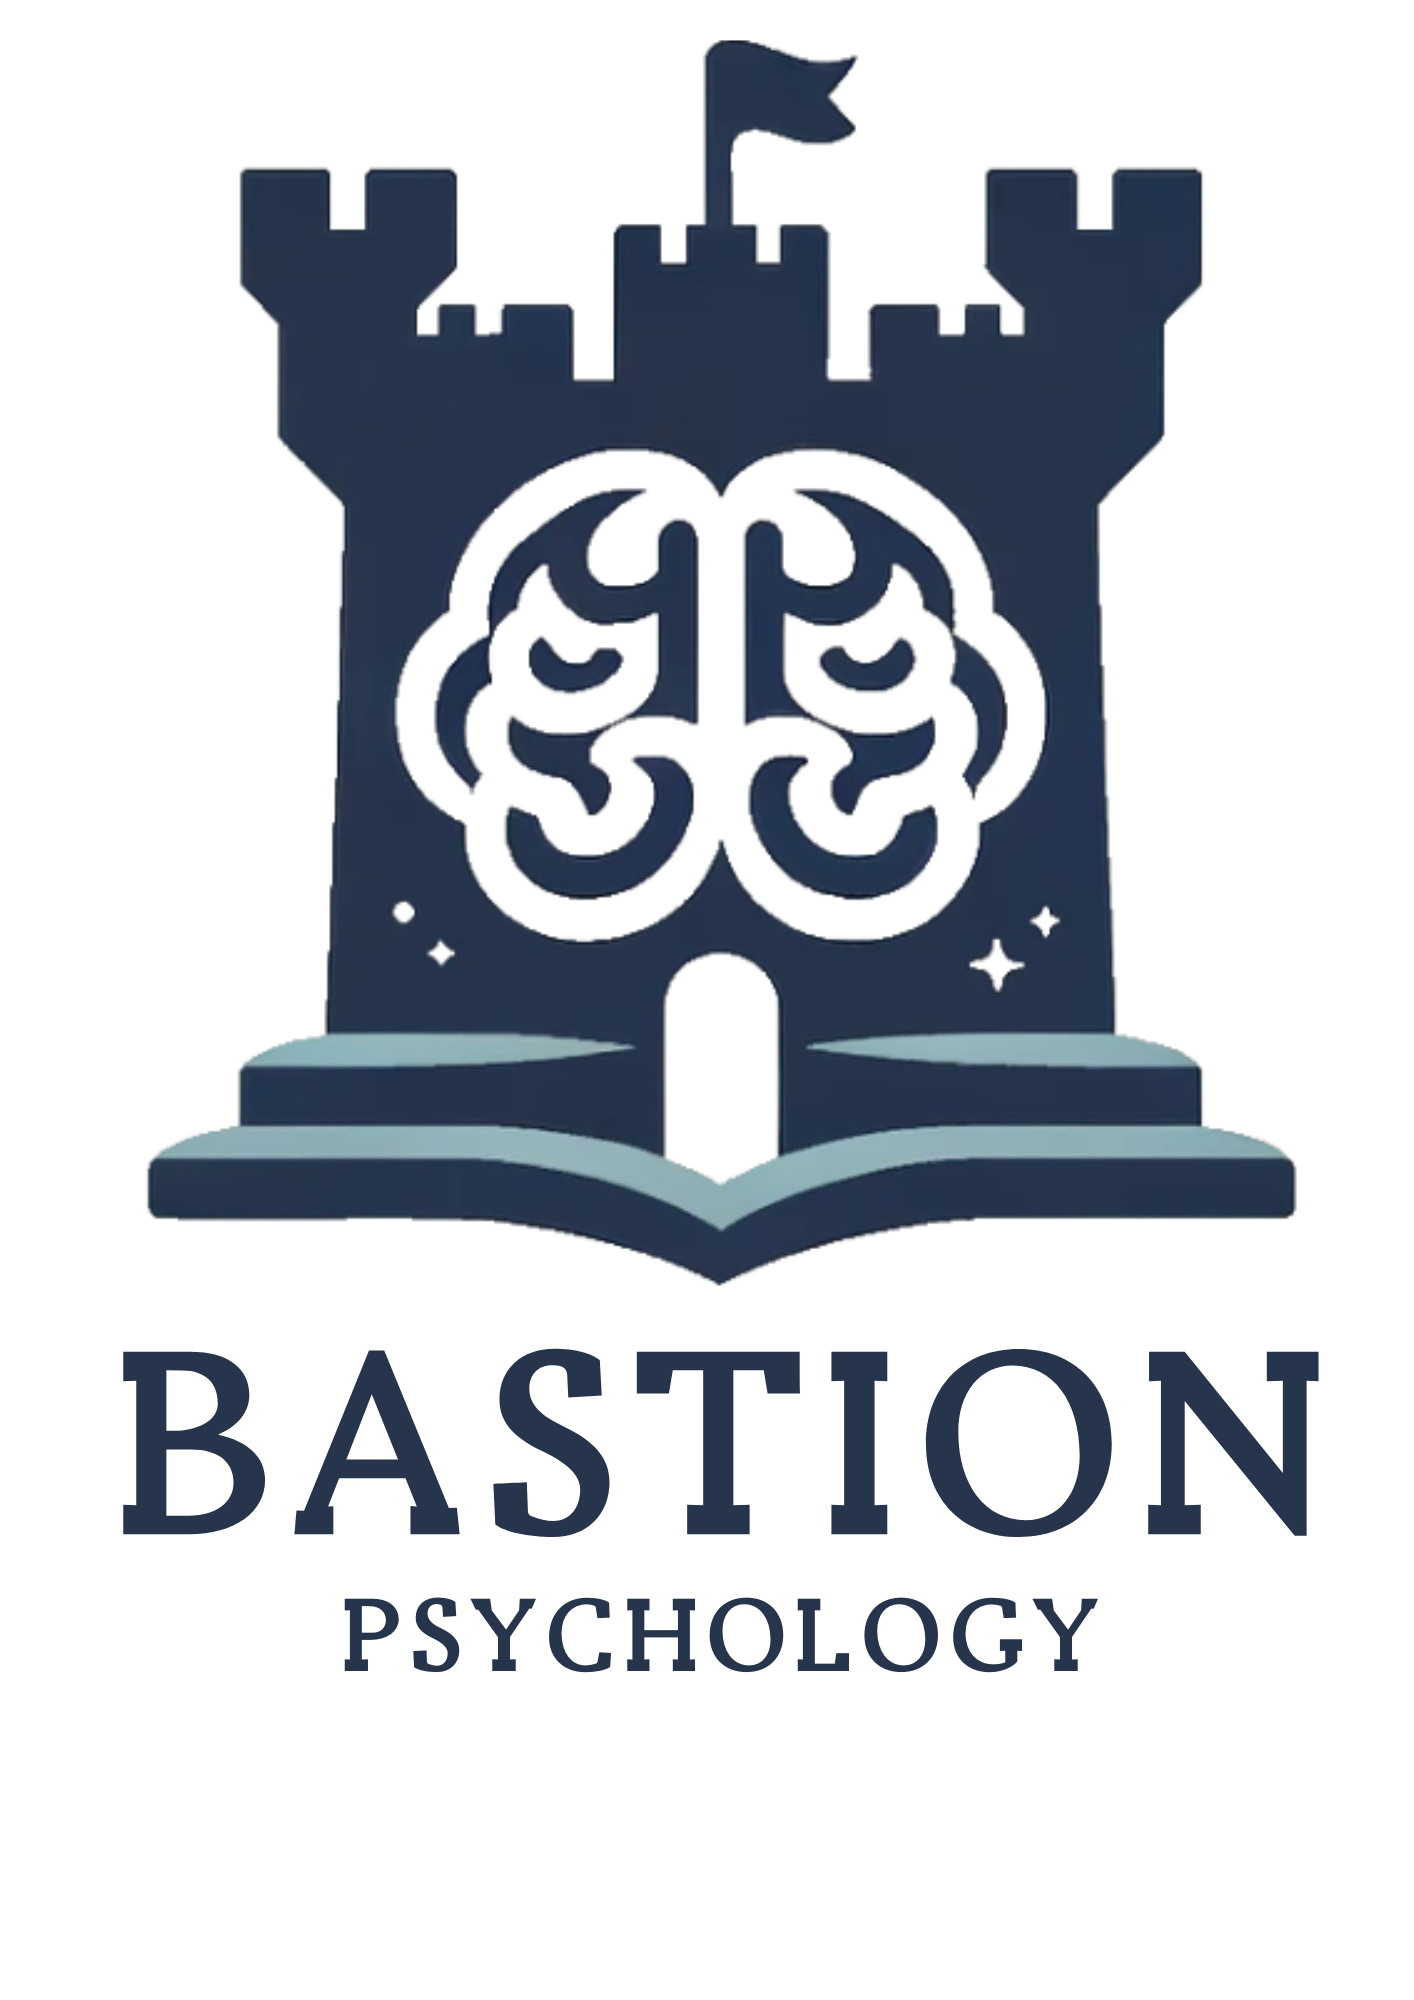 Bastion Psychology